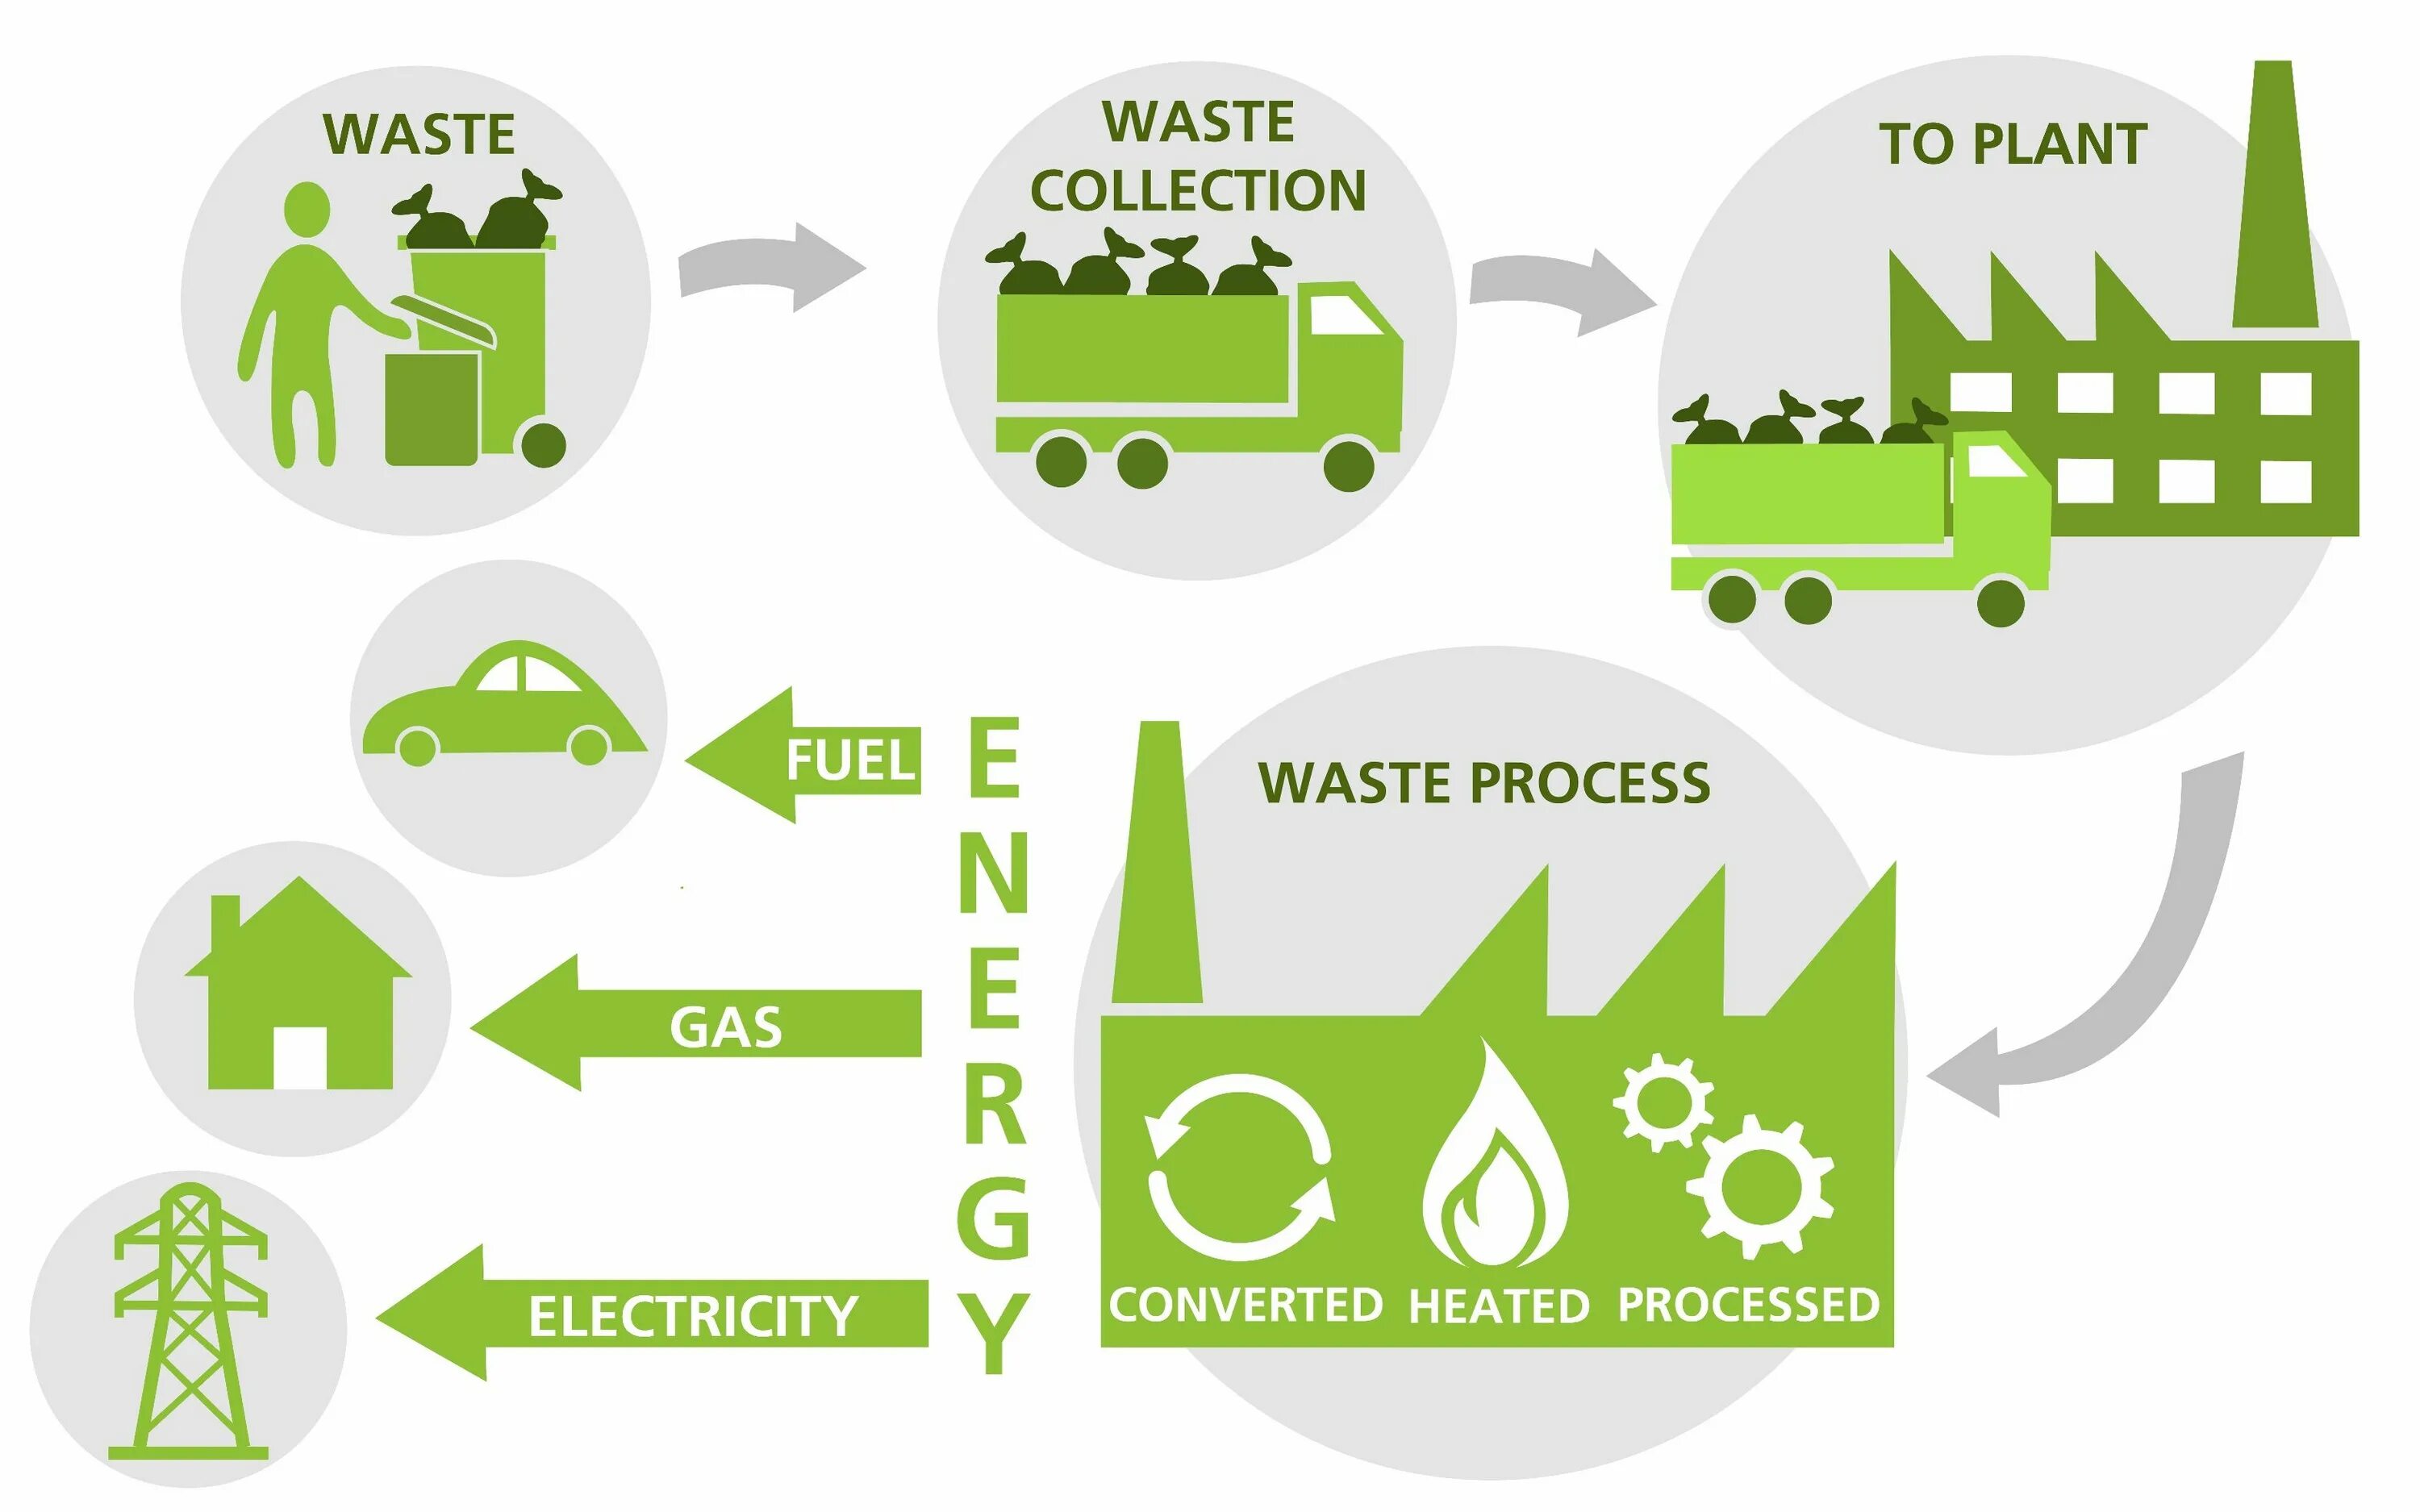 Reduce system. Схема переработки отходов. Переработка мусора и отходов. Рекуперация отходов. Процесс переработки отходов.